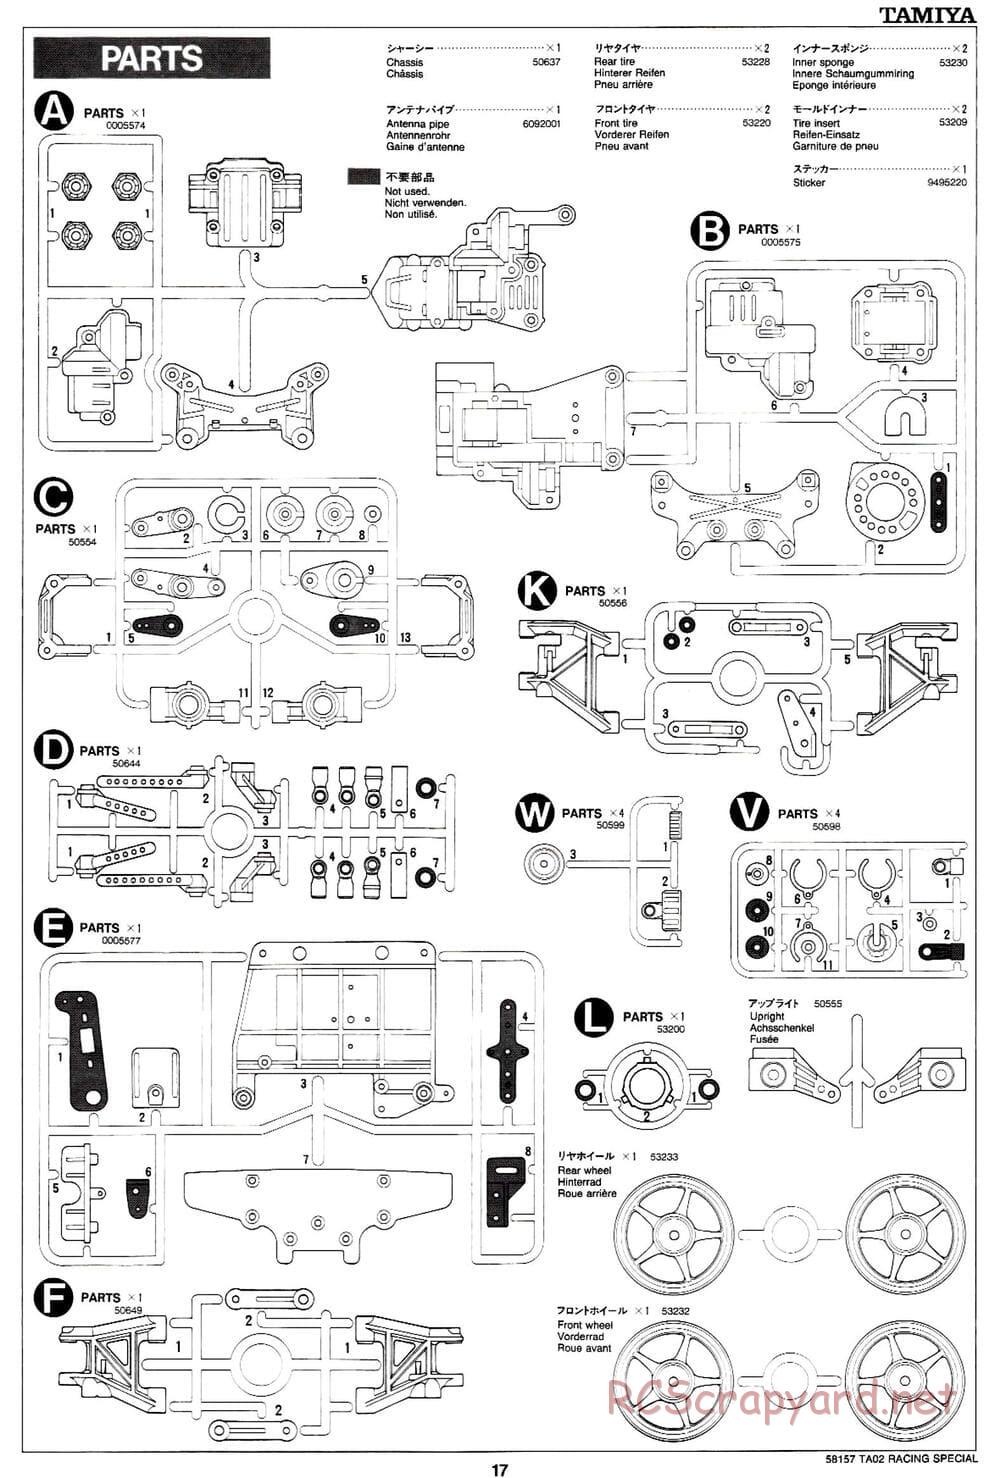 Tamiya - TA-02RS Chassis - Manual - Page 17